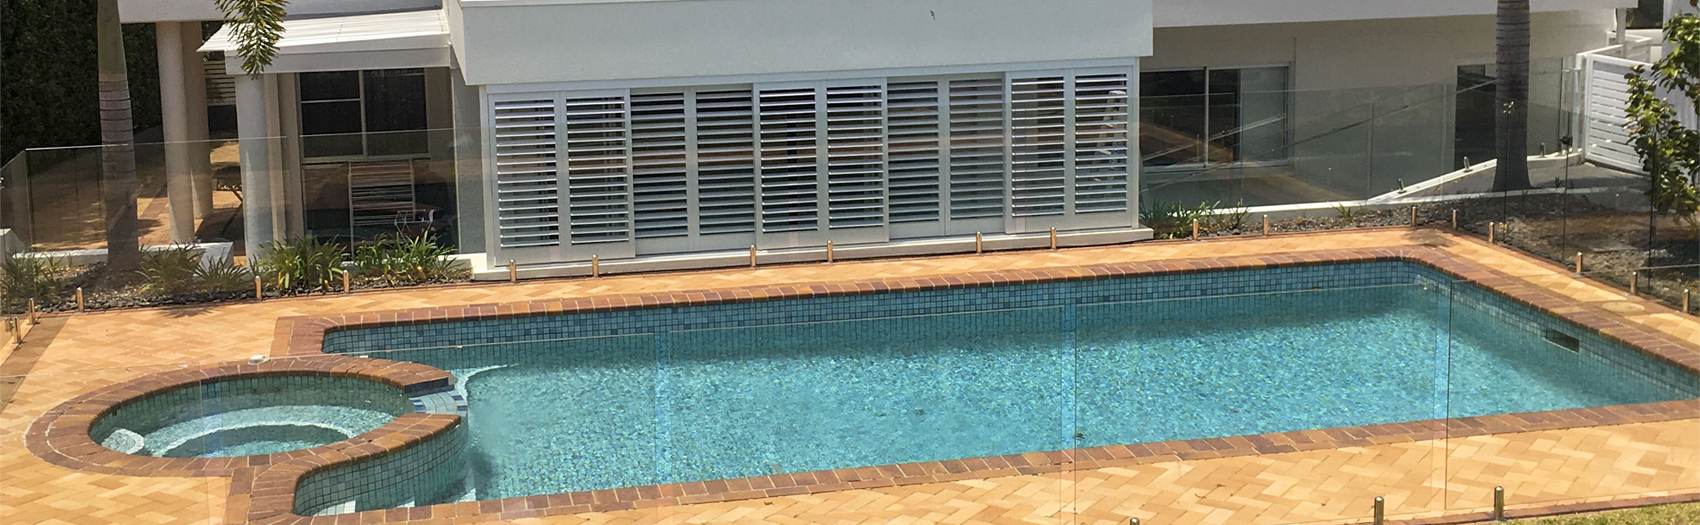 Decor blinds external shutters pool